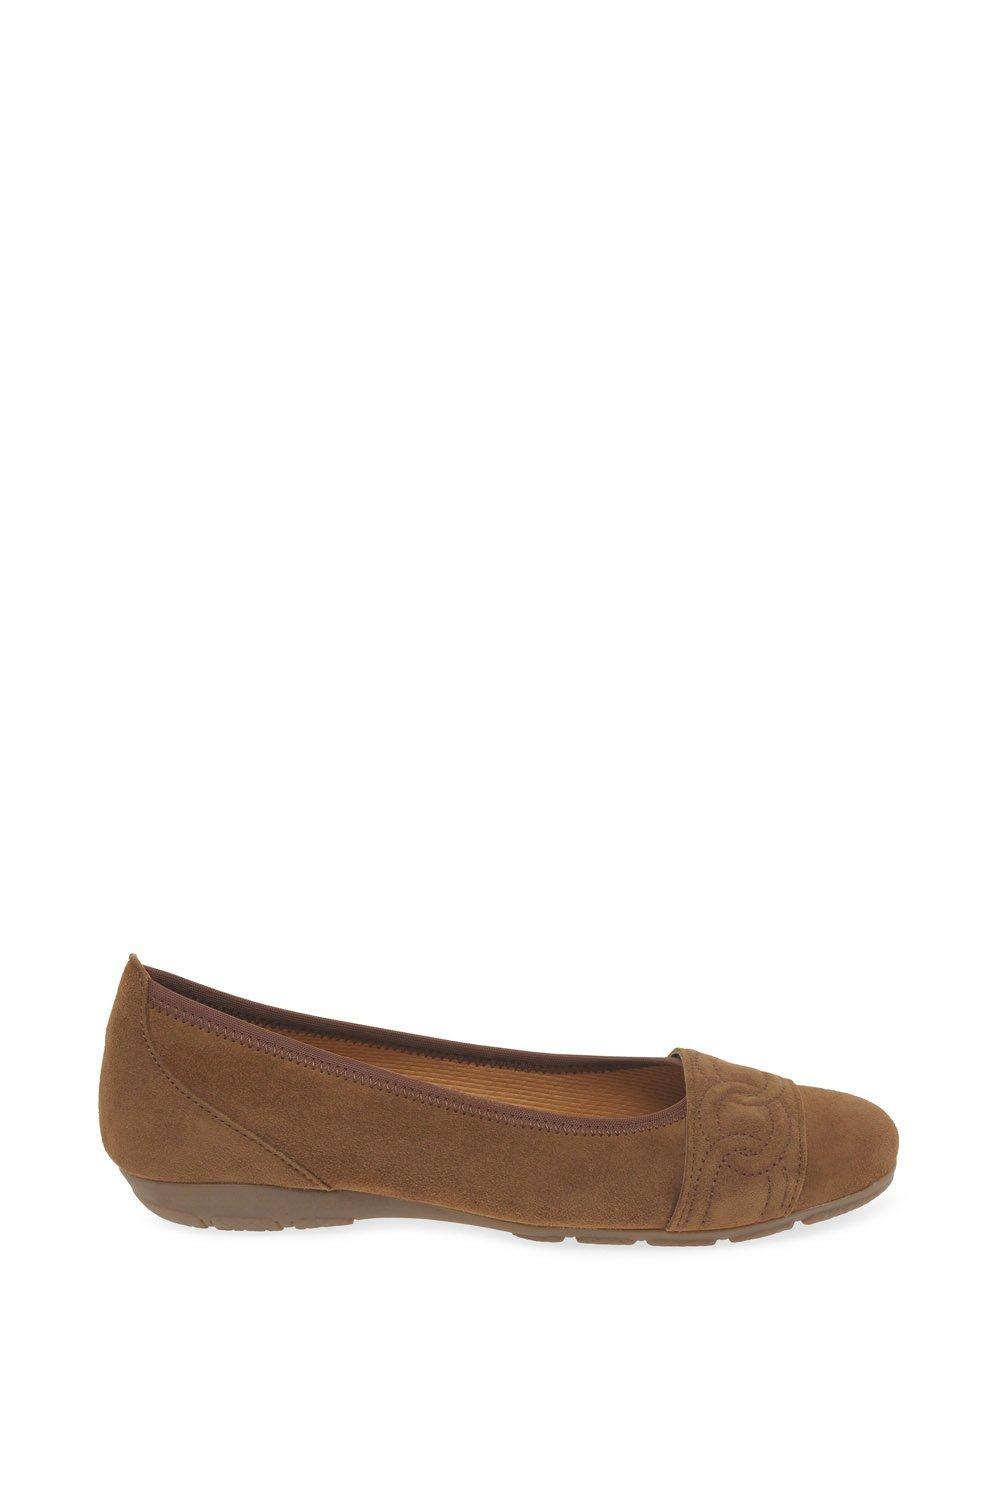 Туфли на плоской подошве «Сходство» Gabor, коричневый